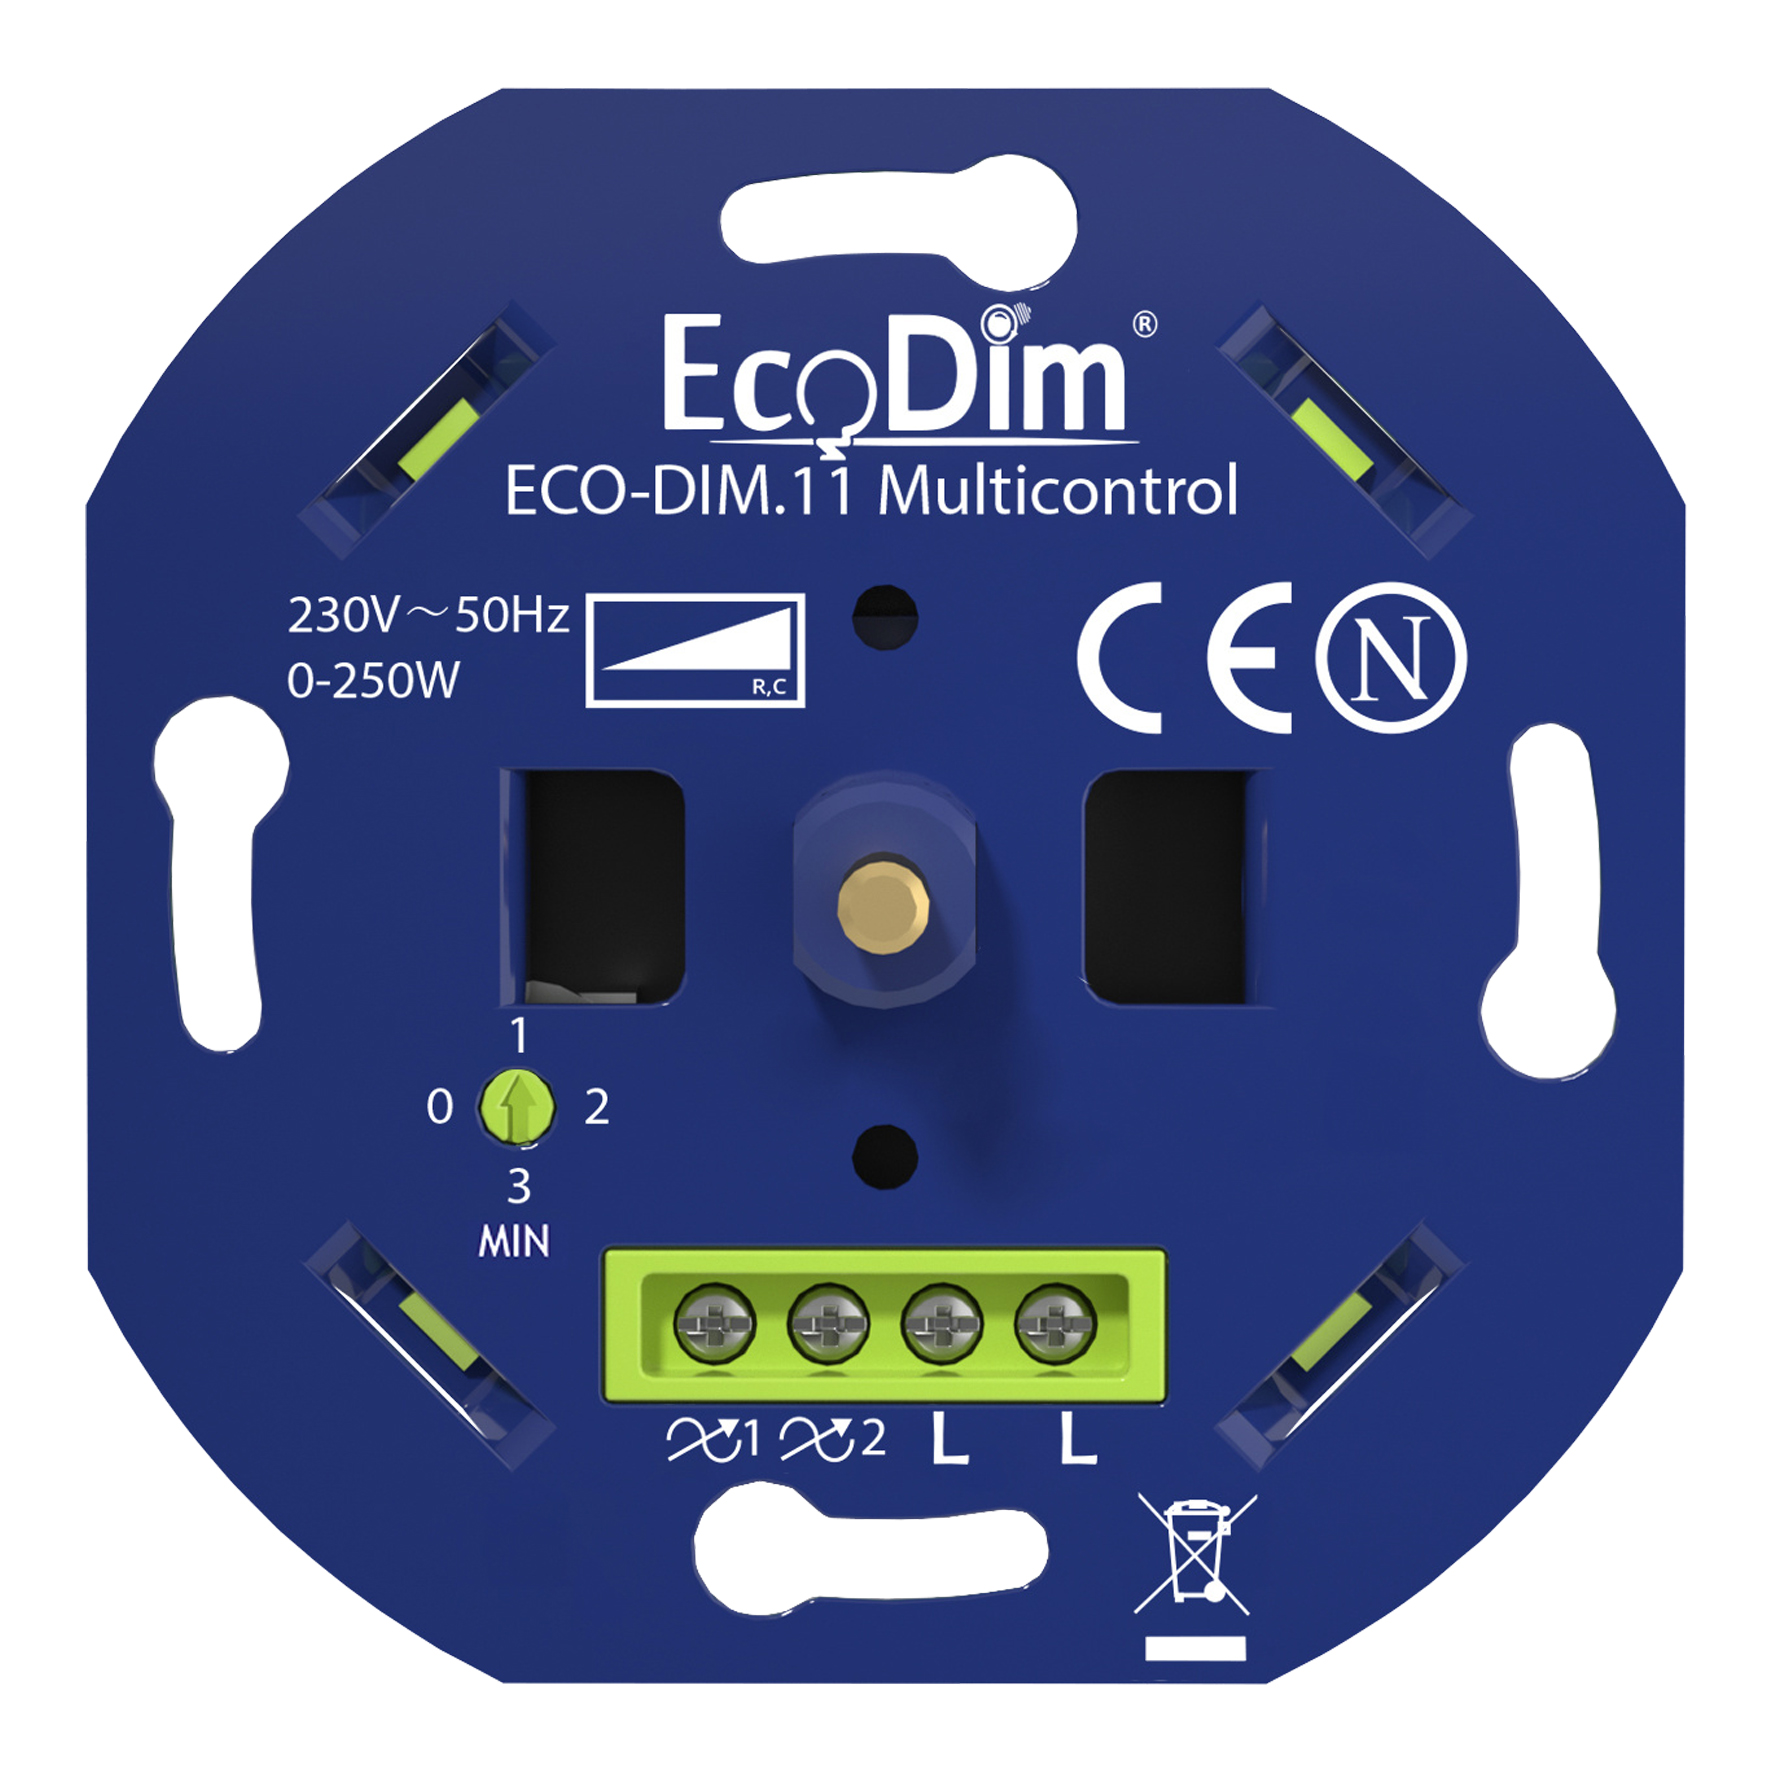 EcoDim ECO-DIM.11 Multicontrol LED Dimmer Module 250W